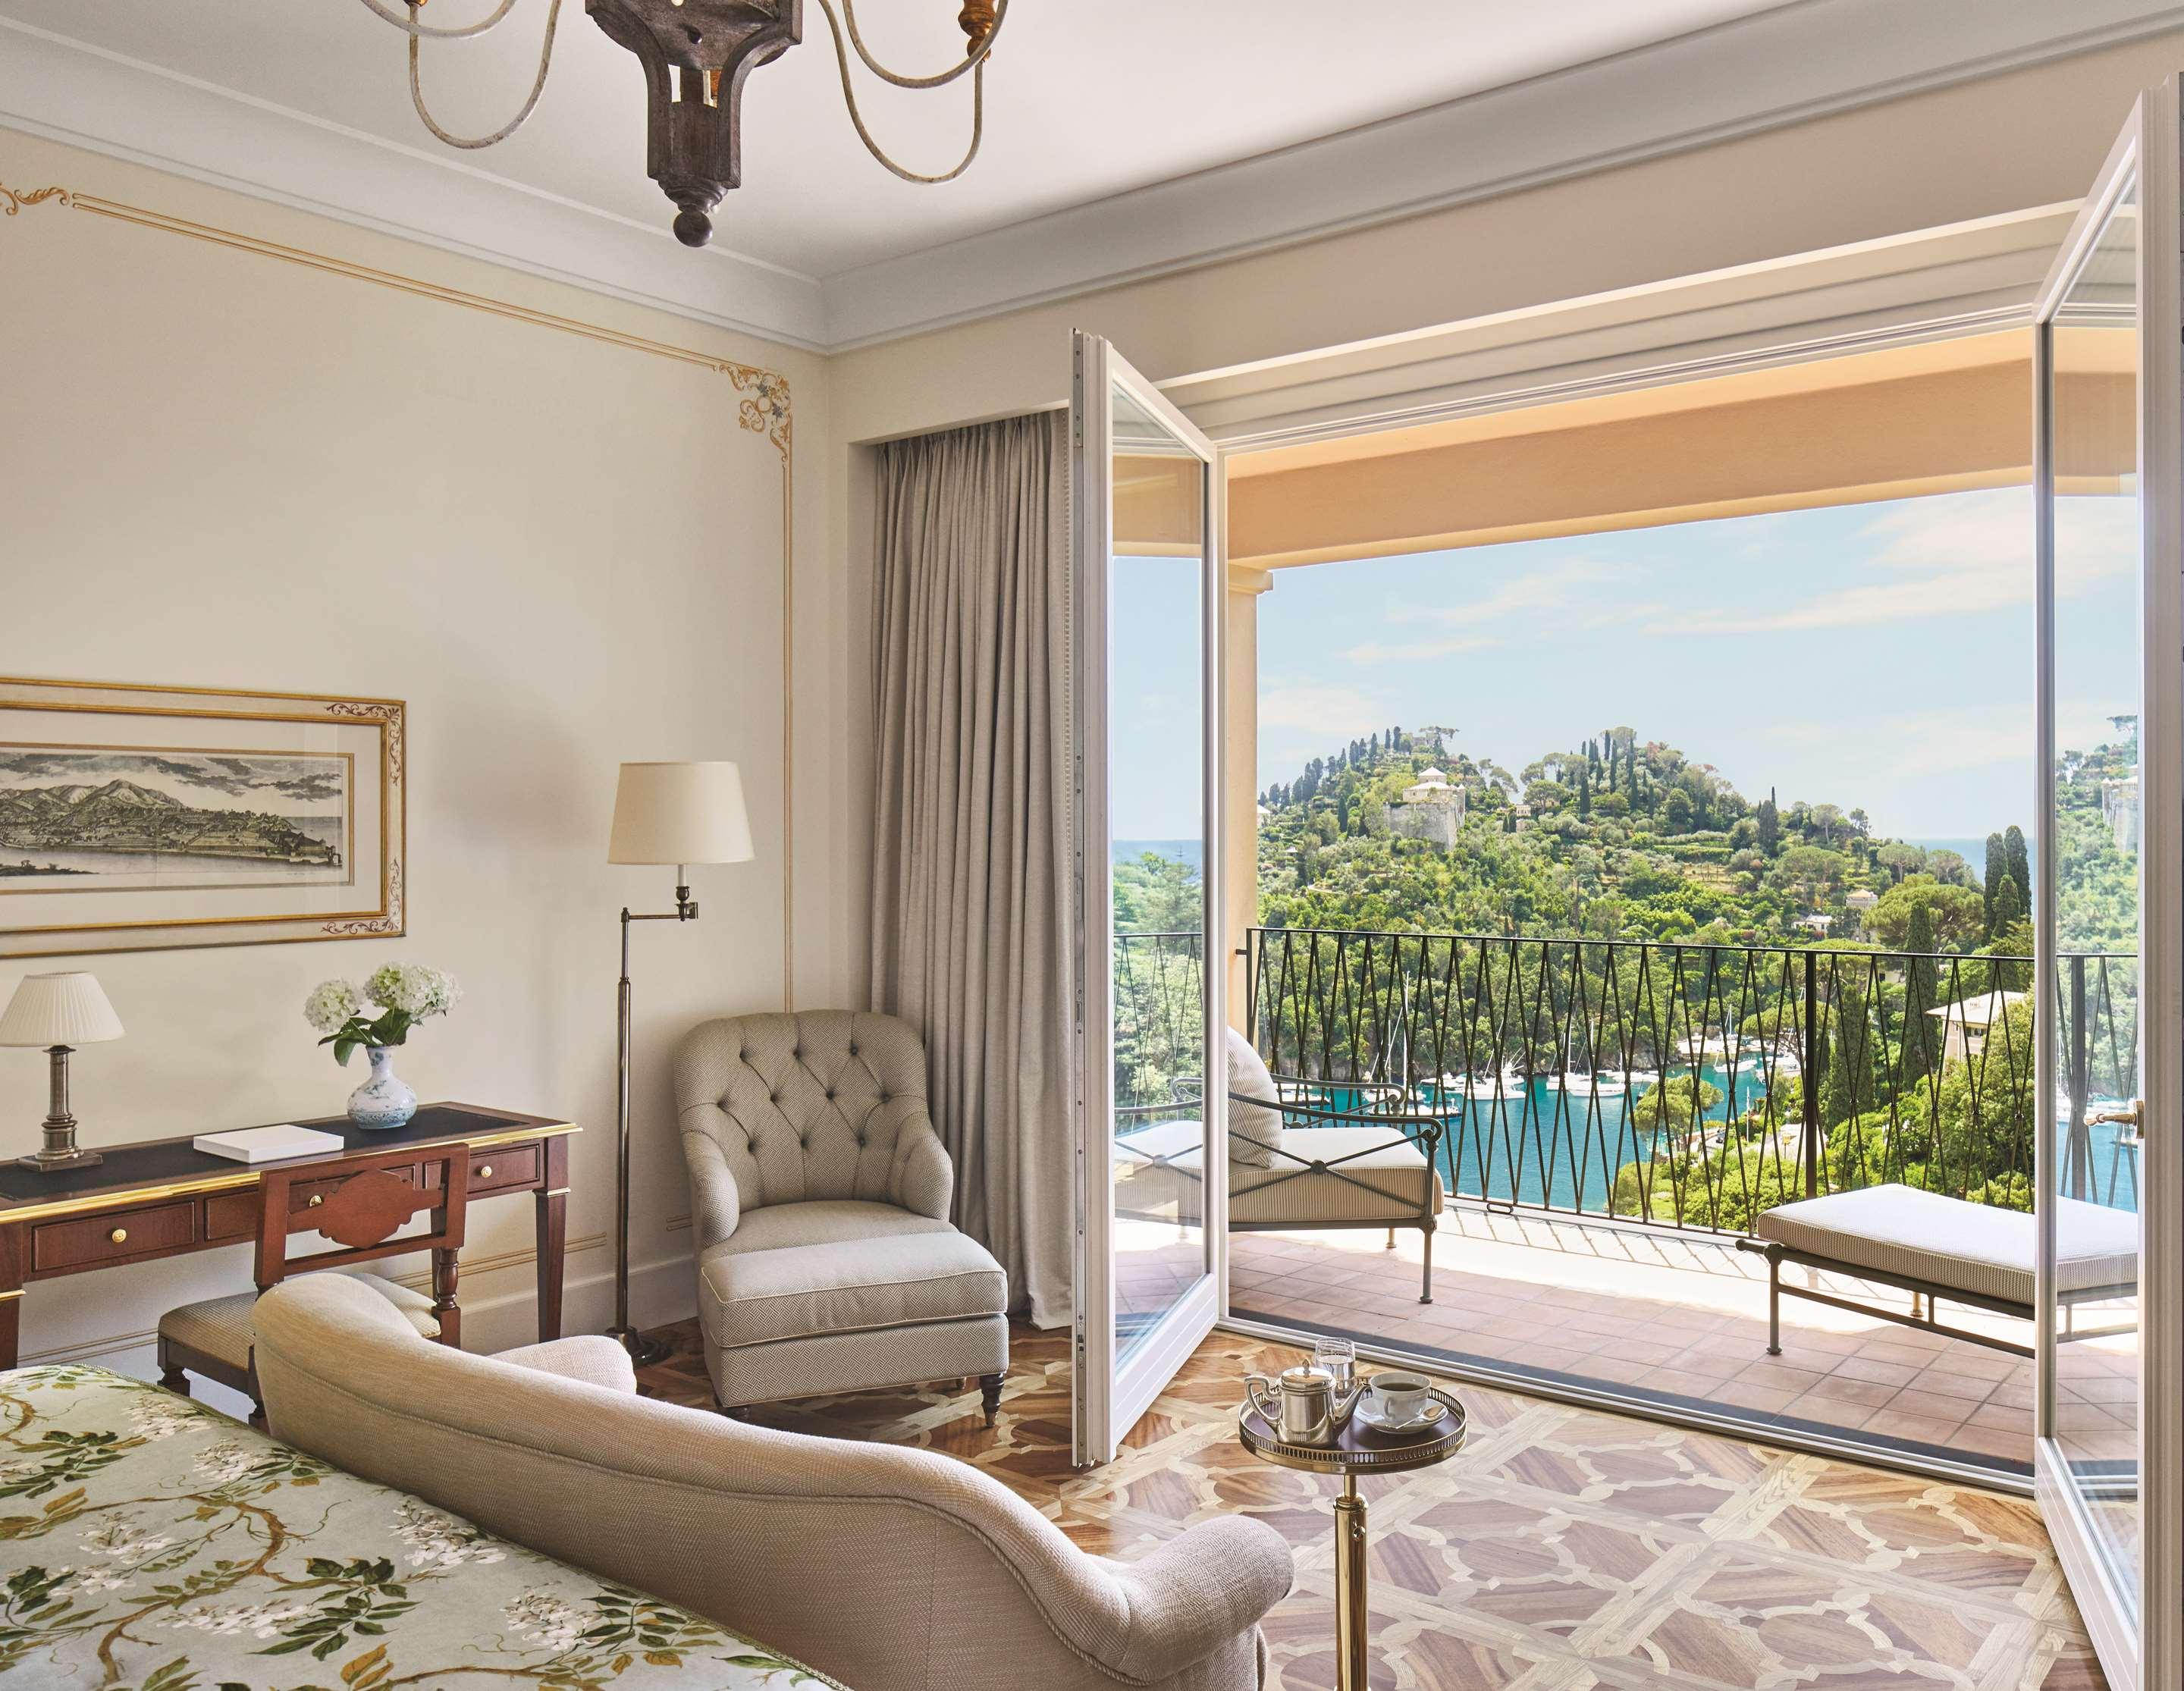 Portofino, Italy Hotels  Belmond Hotel Splendido